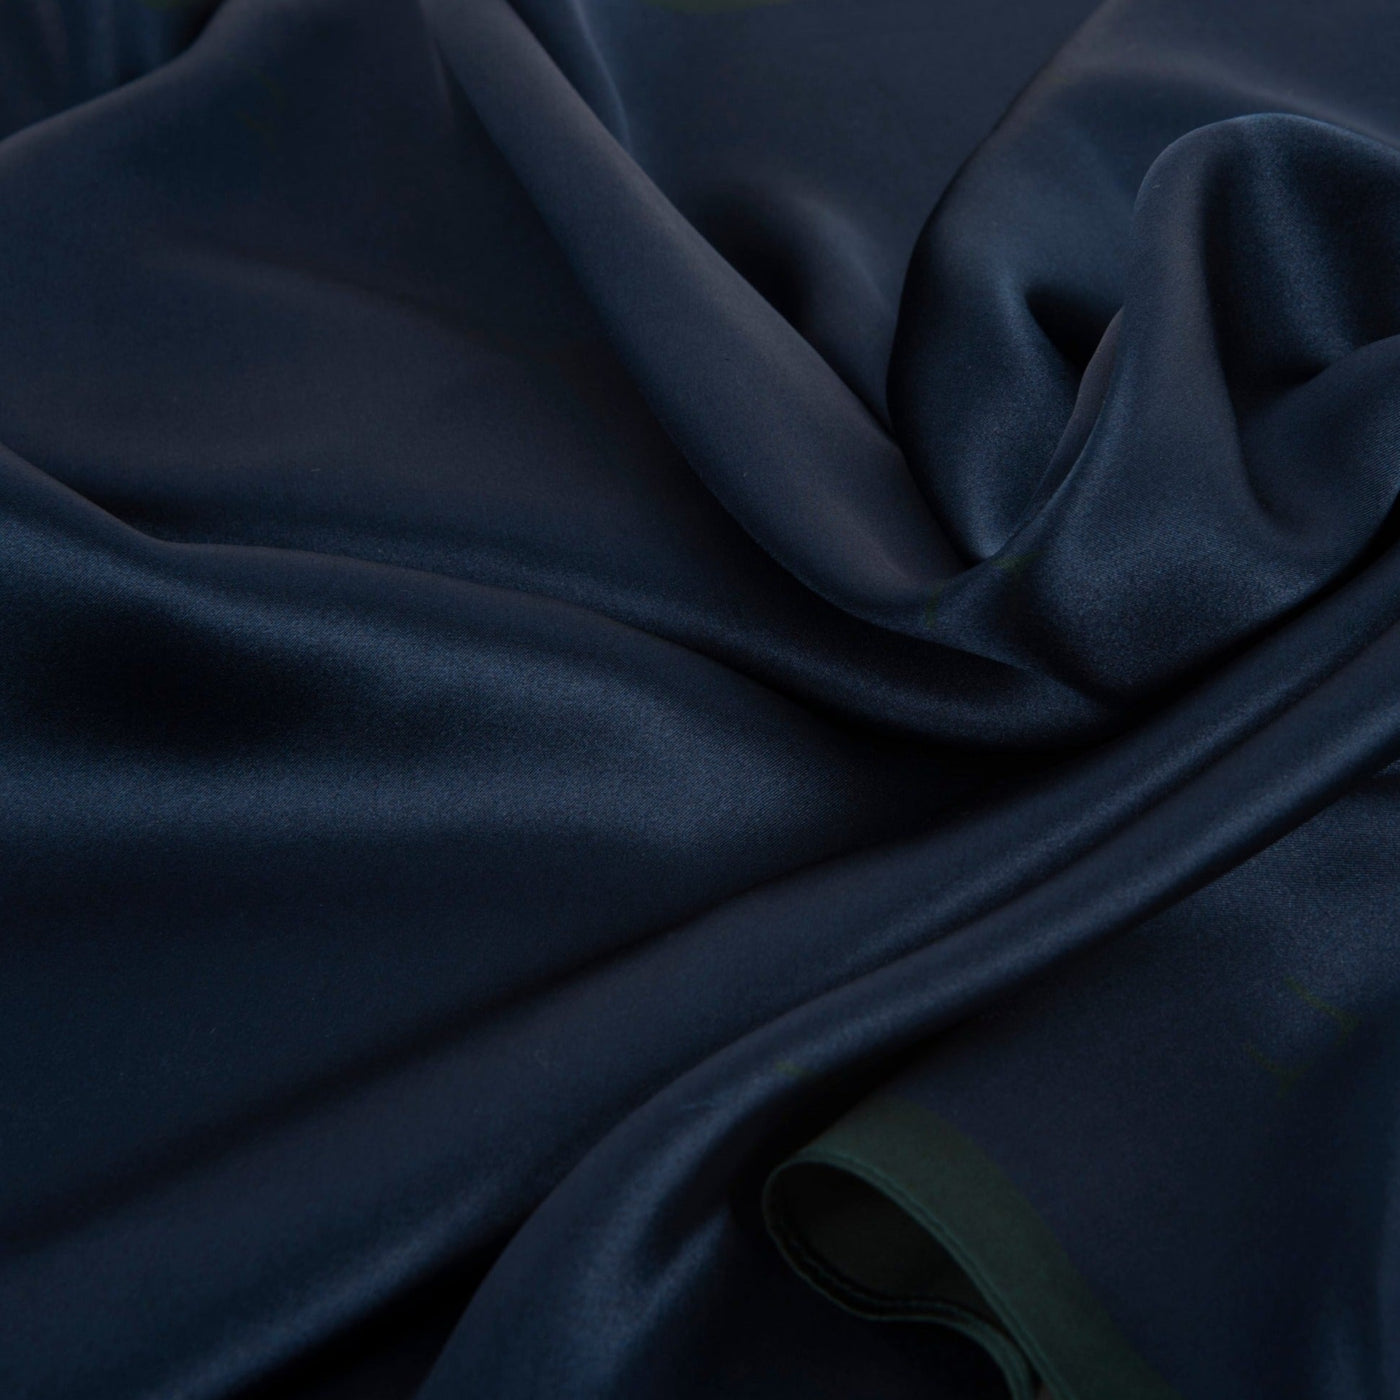 Frimino Paris Blue Silkeskjerf - Mørkeblå skjerf i 100% silke med mørk grønn kant og diskre print